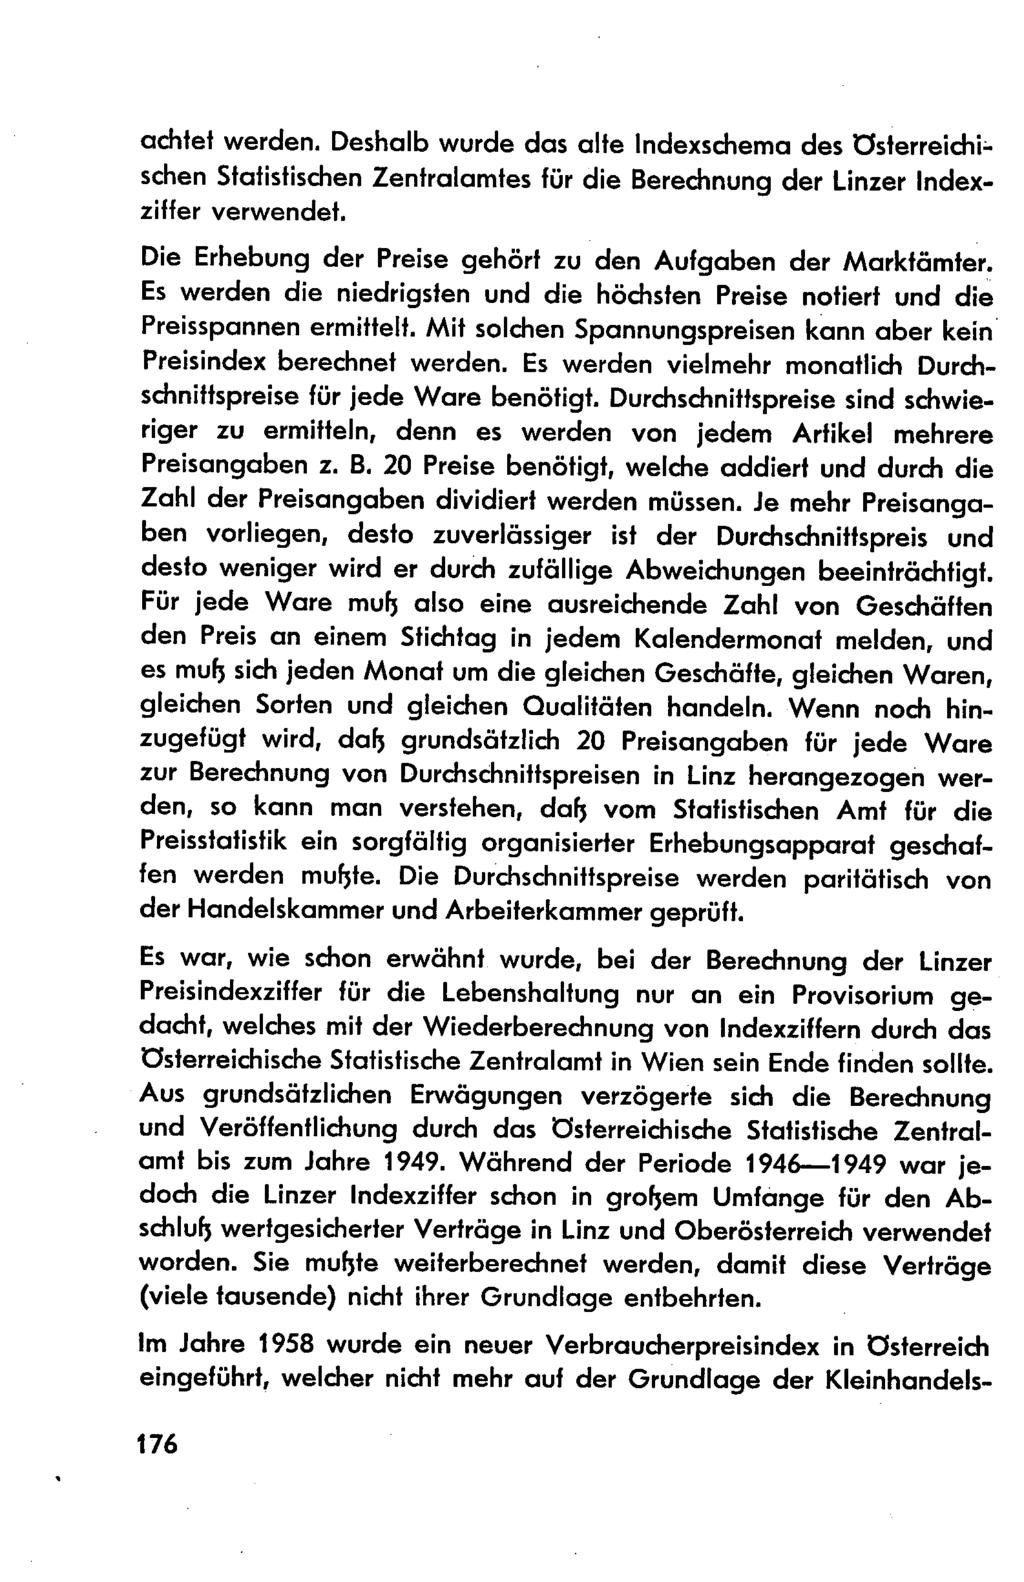 achtet werden. Deshalb wurde das alte ndexschema des österreichi:. schen Statistischen Zentralamtes für die Berechnung der Linzer ndexziffer verwendet.